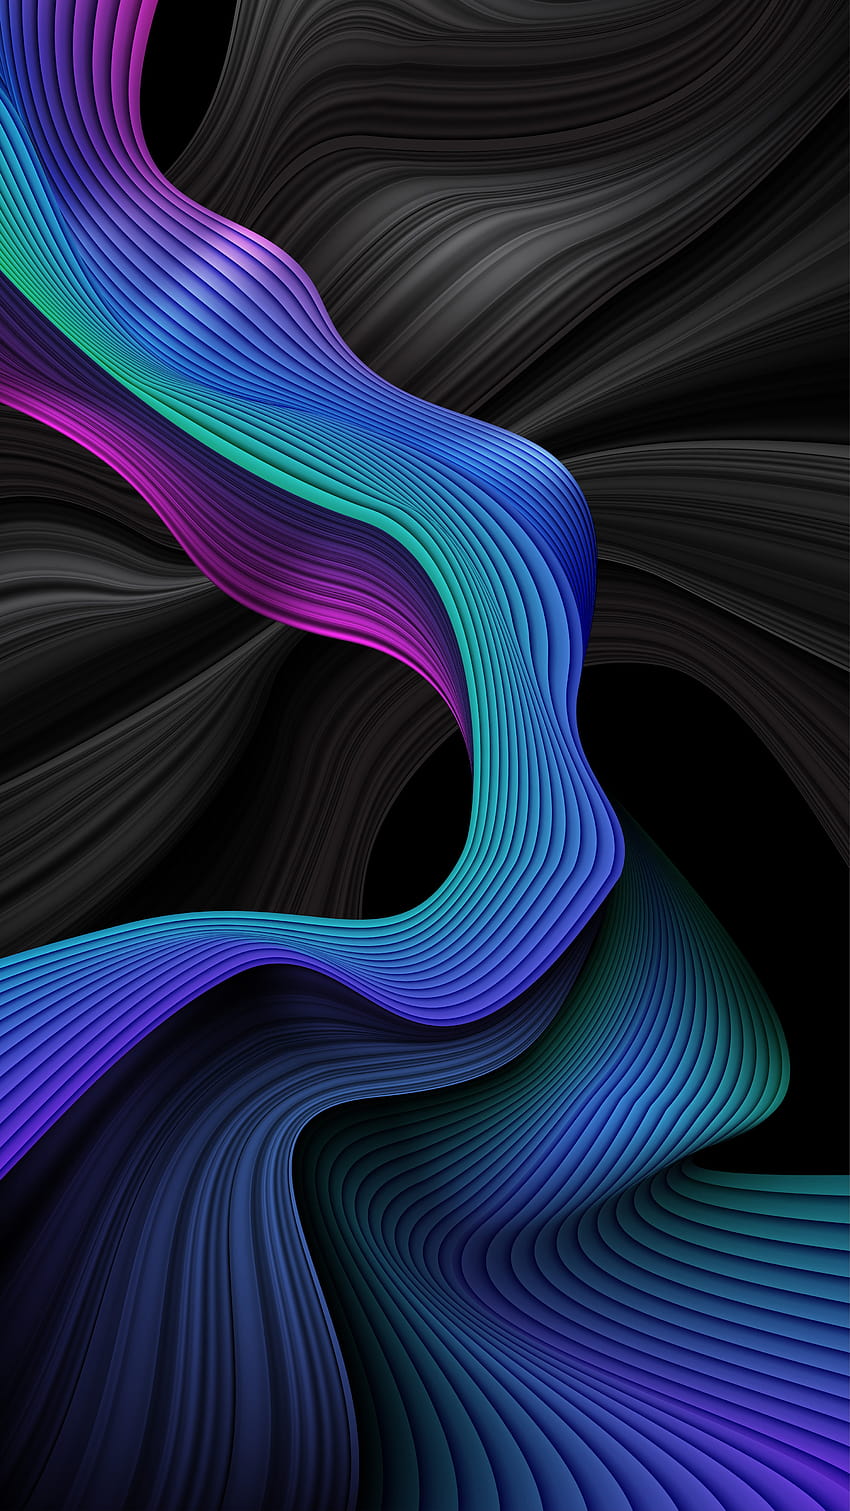 Latar belakang garis-garis bergelombang abstrak berwarna biru dan hitam 1211544 Seni Vektor di Vecteezy, garis bergelombang spiral berwarna-warni wallpaper ponsel HD